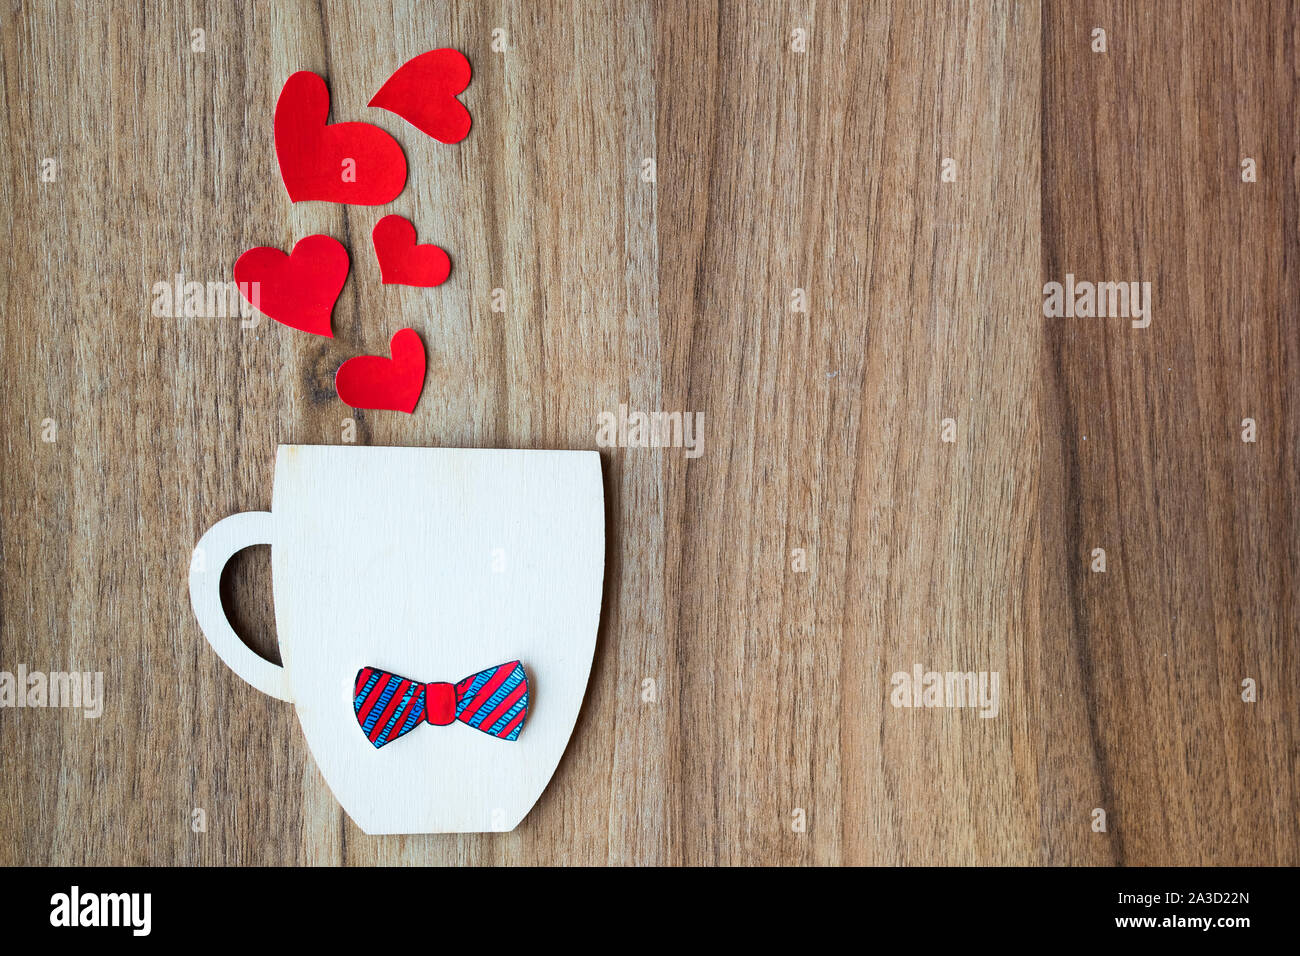 Padri giorno concetto. Coppa decorativa con carta filtro bow tie e cuori rossi su sfondo di legno. Copyspace. Foto Stock